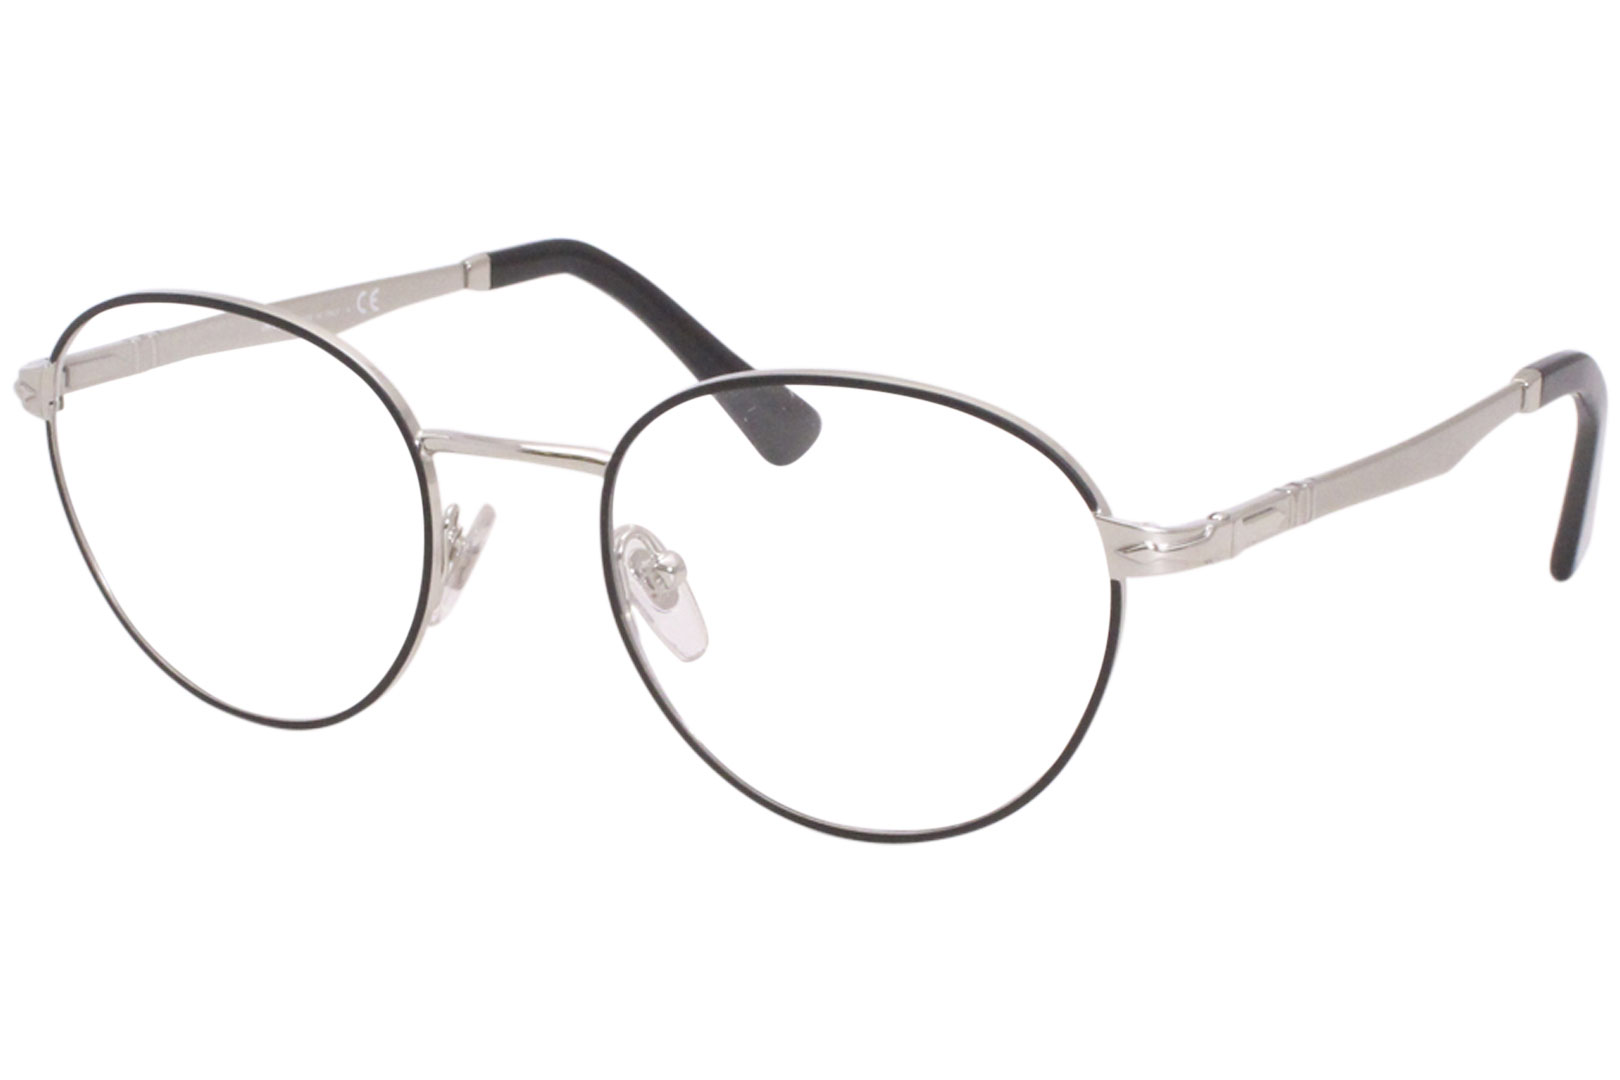 Persol PO2460V 1074 Eyeglasses Men's Black/Silver Full Rim Optical ...